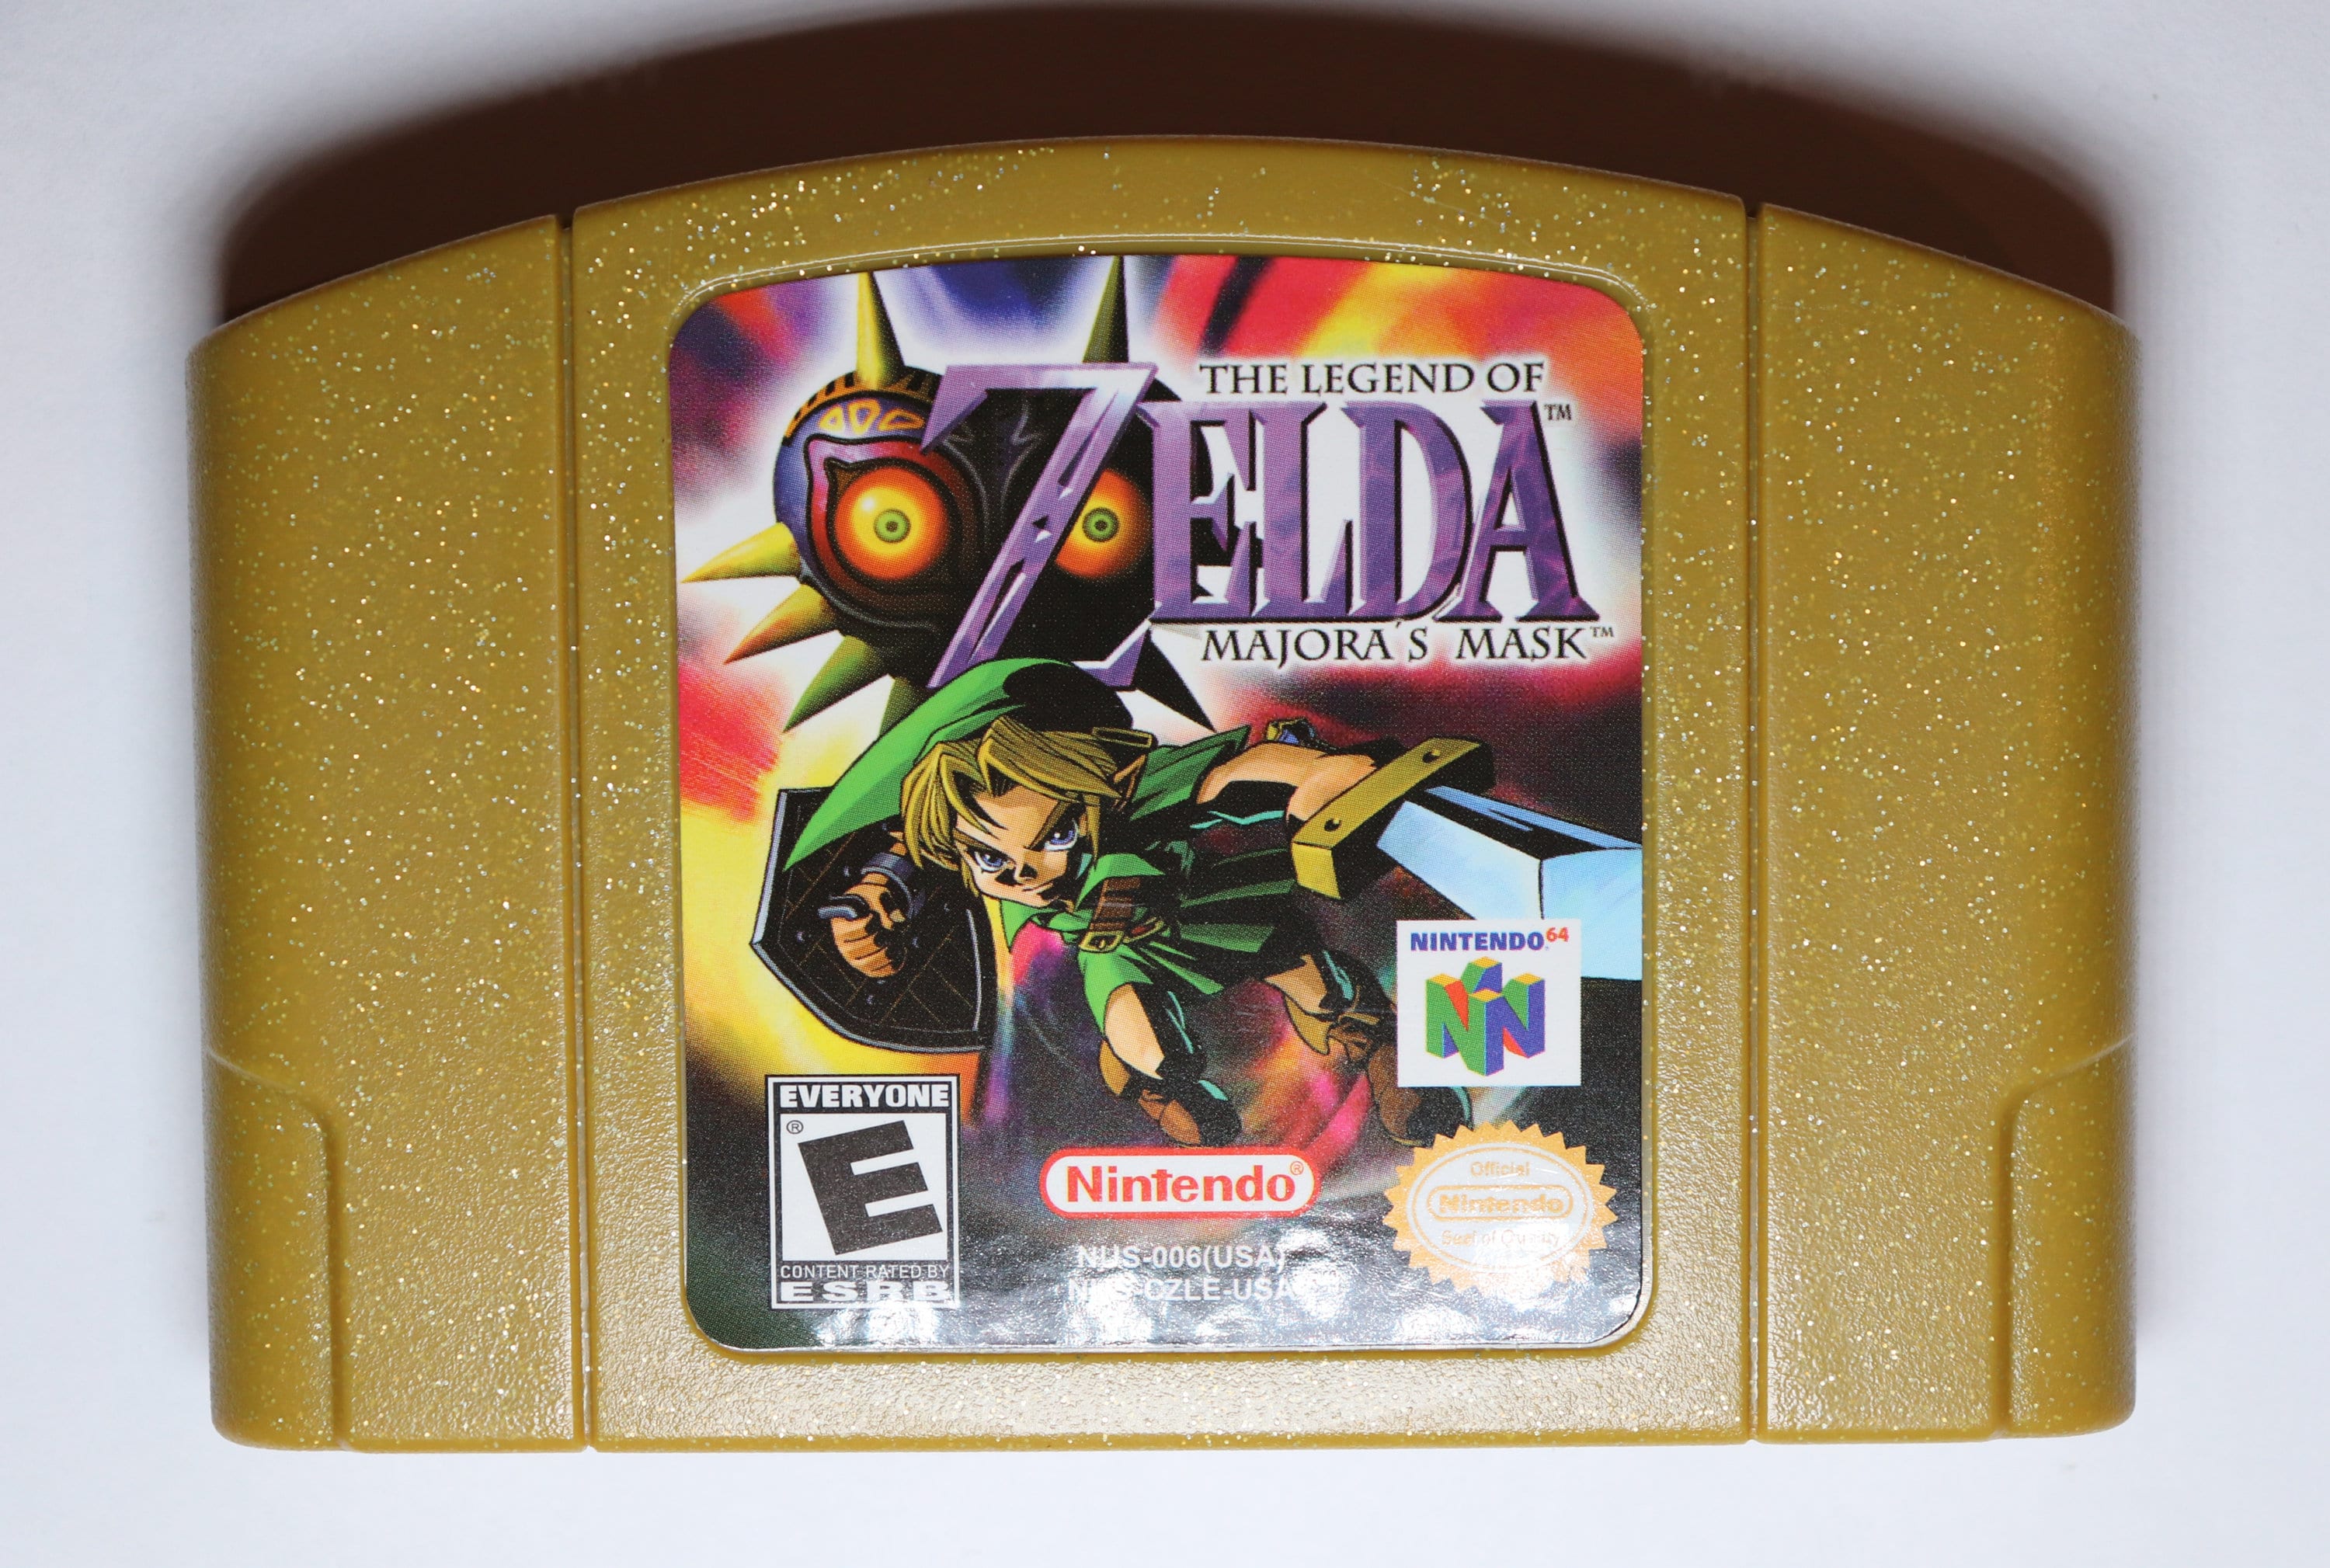 The of Zelda: Mask Nintendo 64